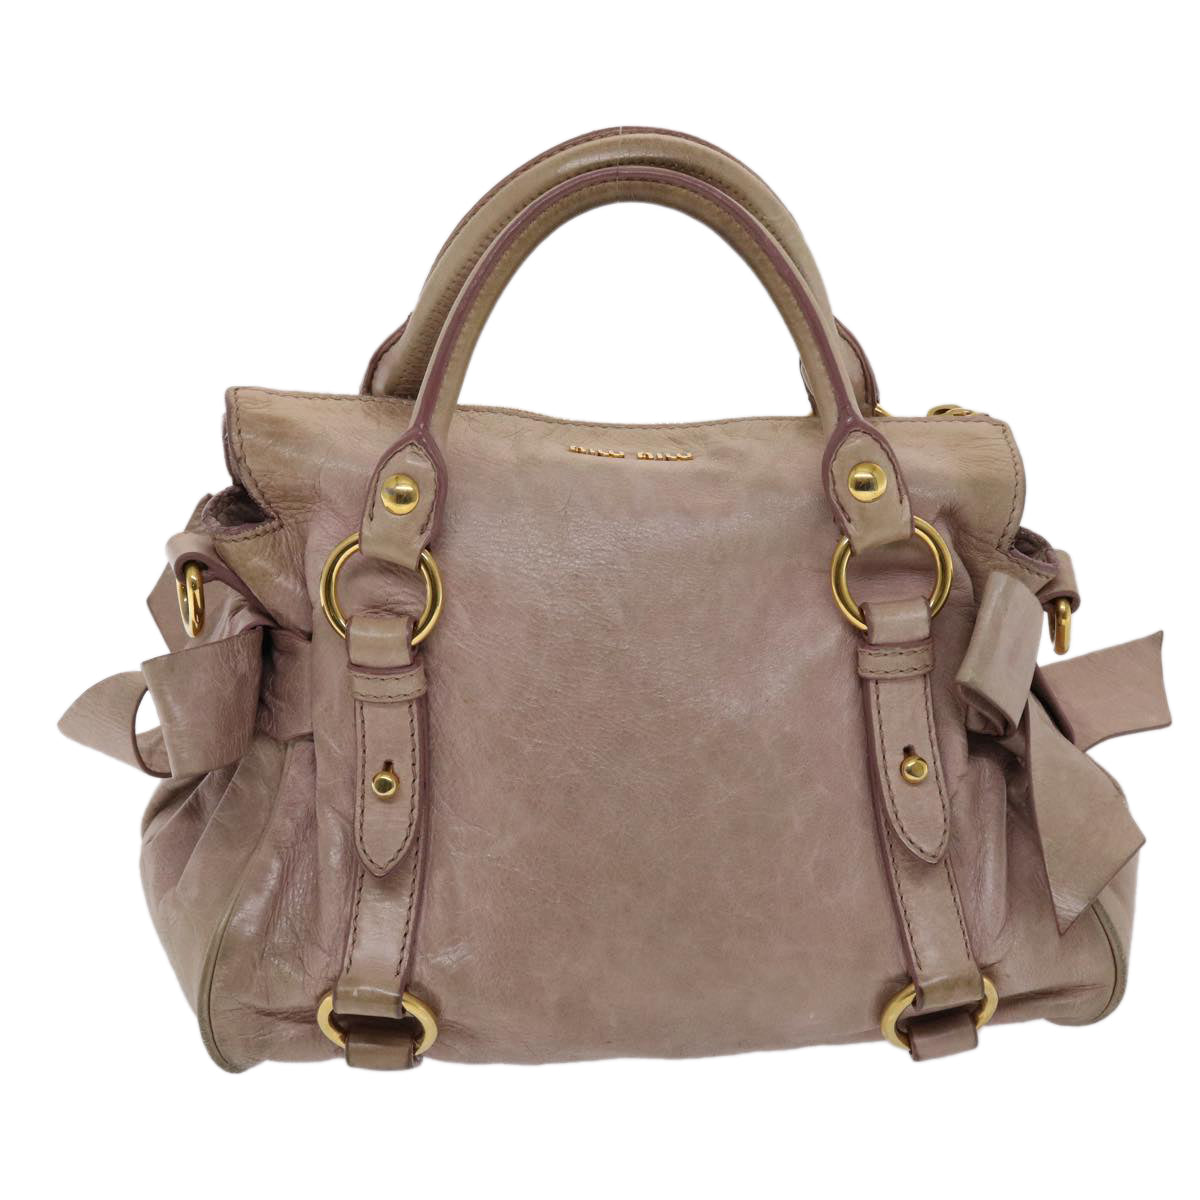 Miu Miu Hand Bag Leather 2way Pink Auth yk7991 - 0